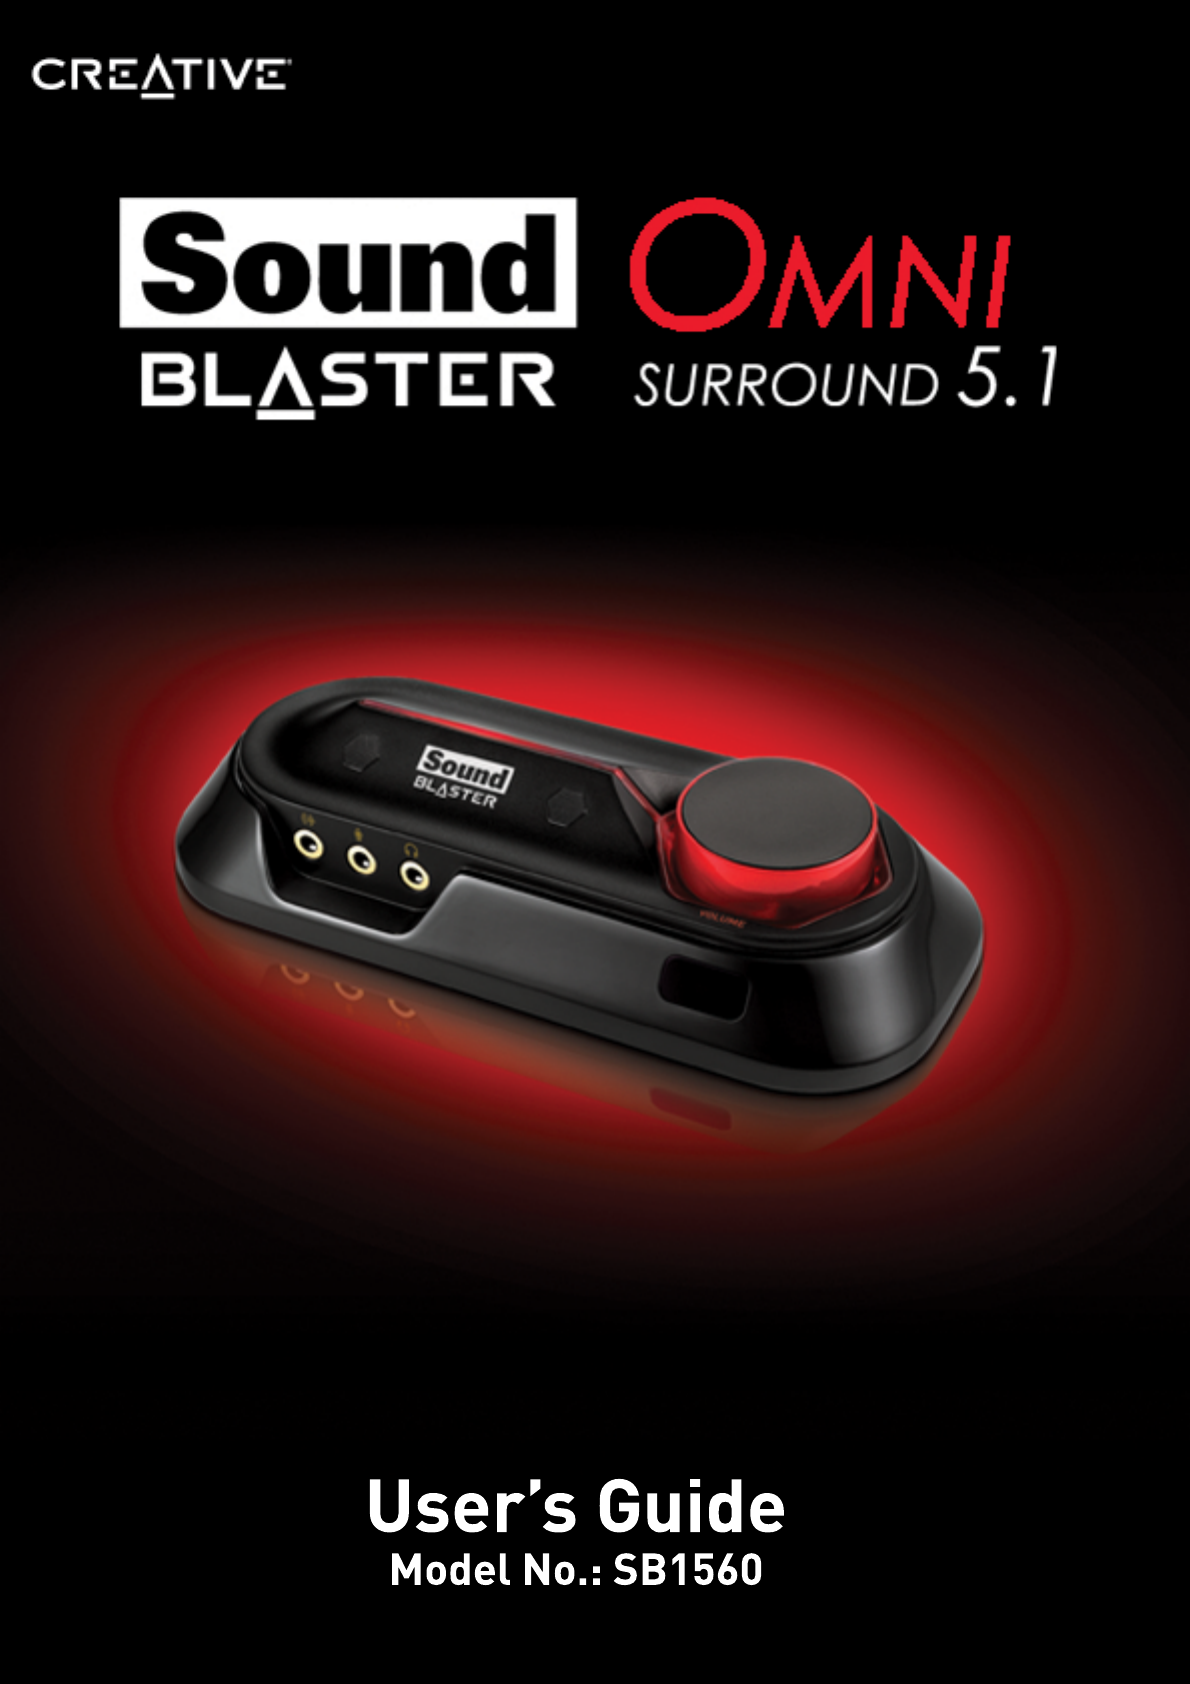 creative sound blaster omni surround 5.1